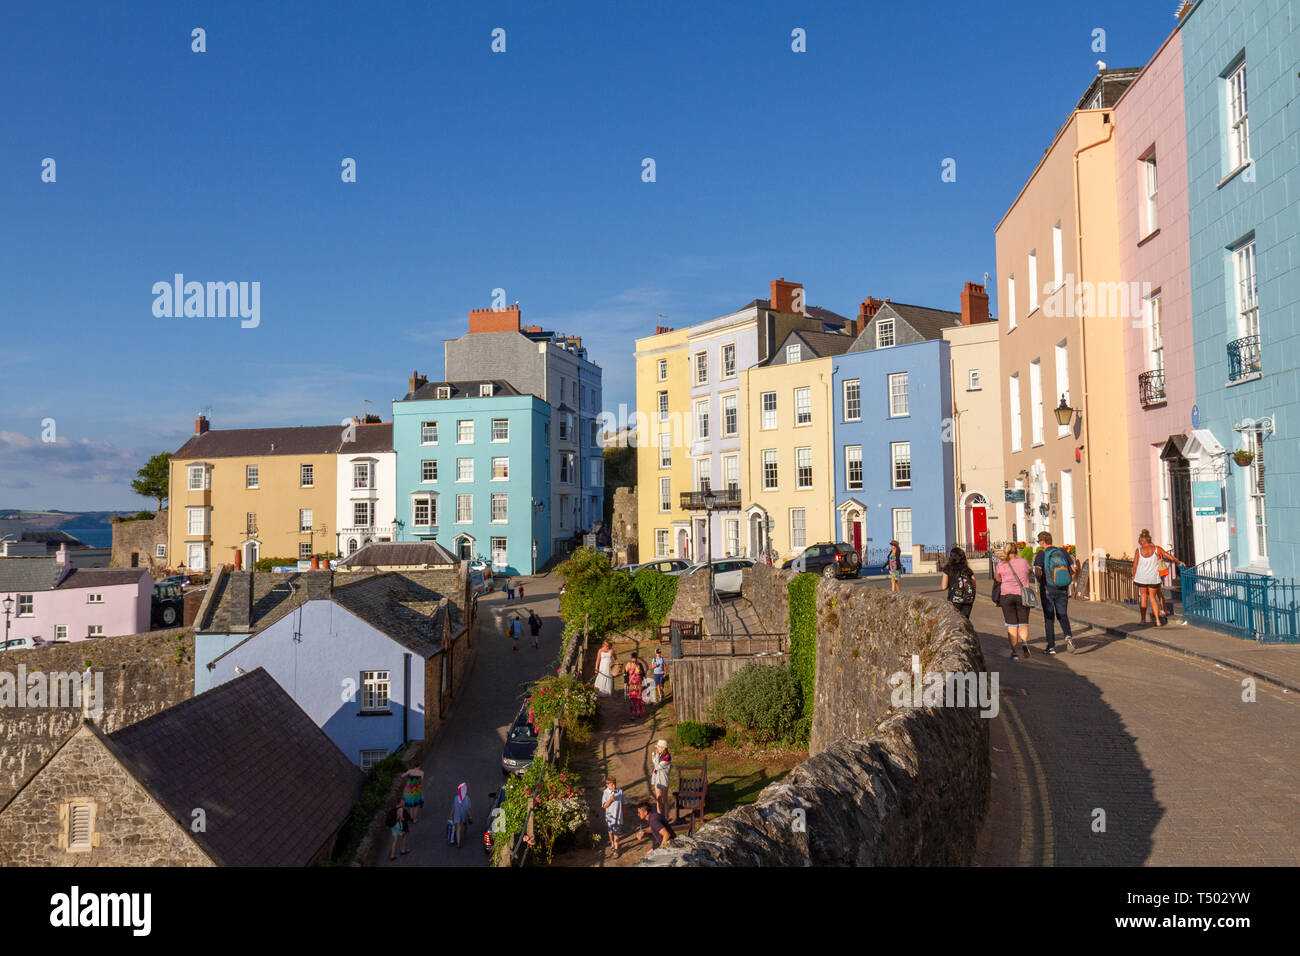 Les maisons colorées donnant sur le joli port de Tenby, Dyfed, Pays de Galles. Banque D'Images